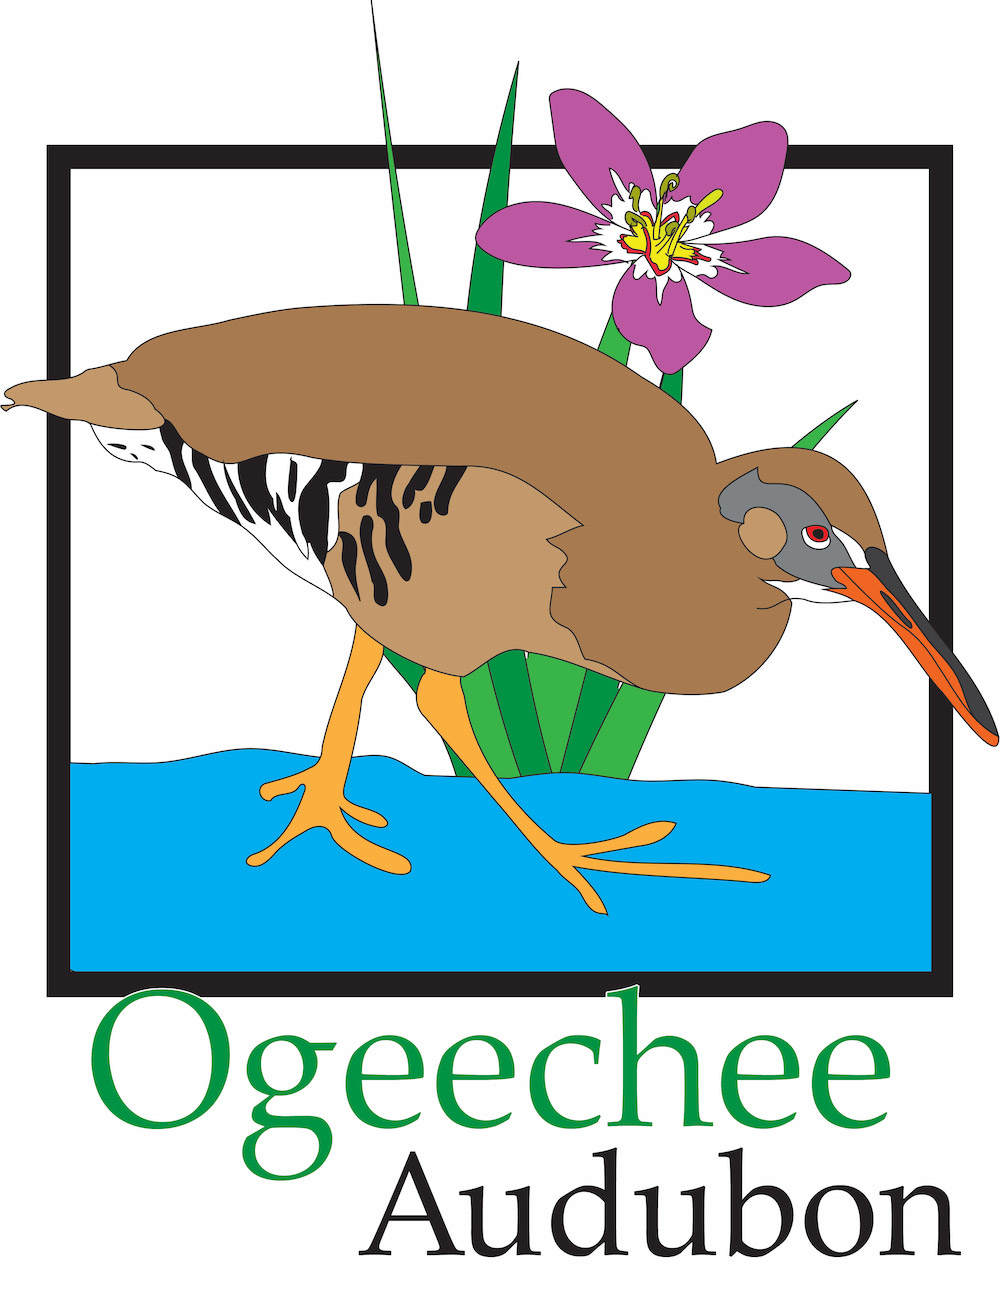 Ogeechee Audubon Society